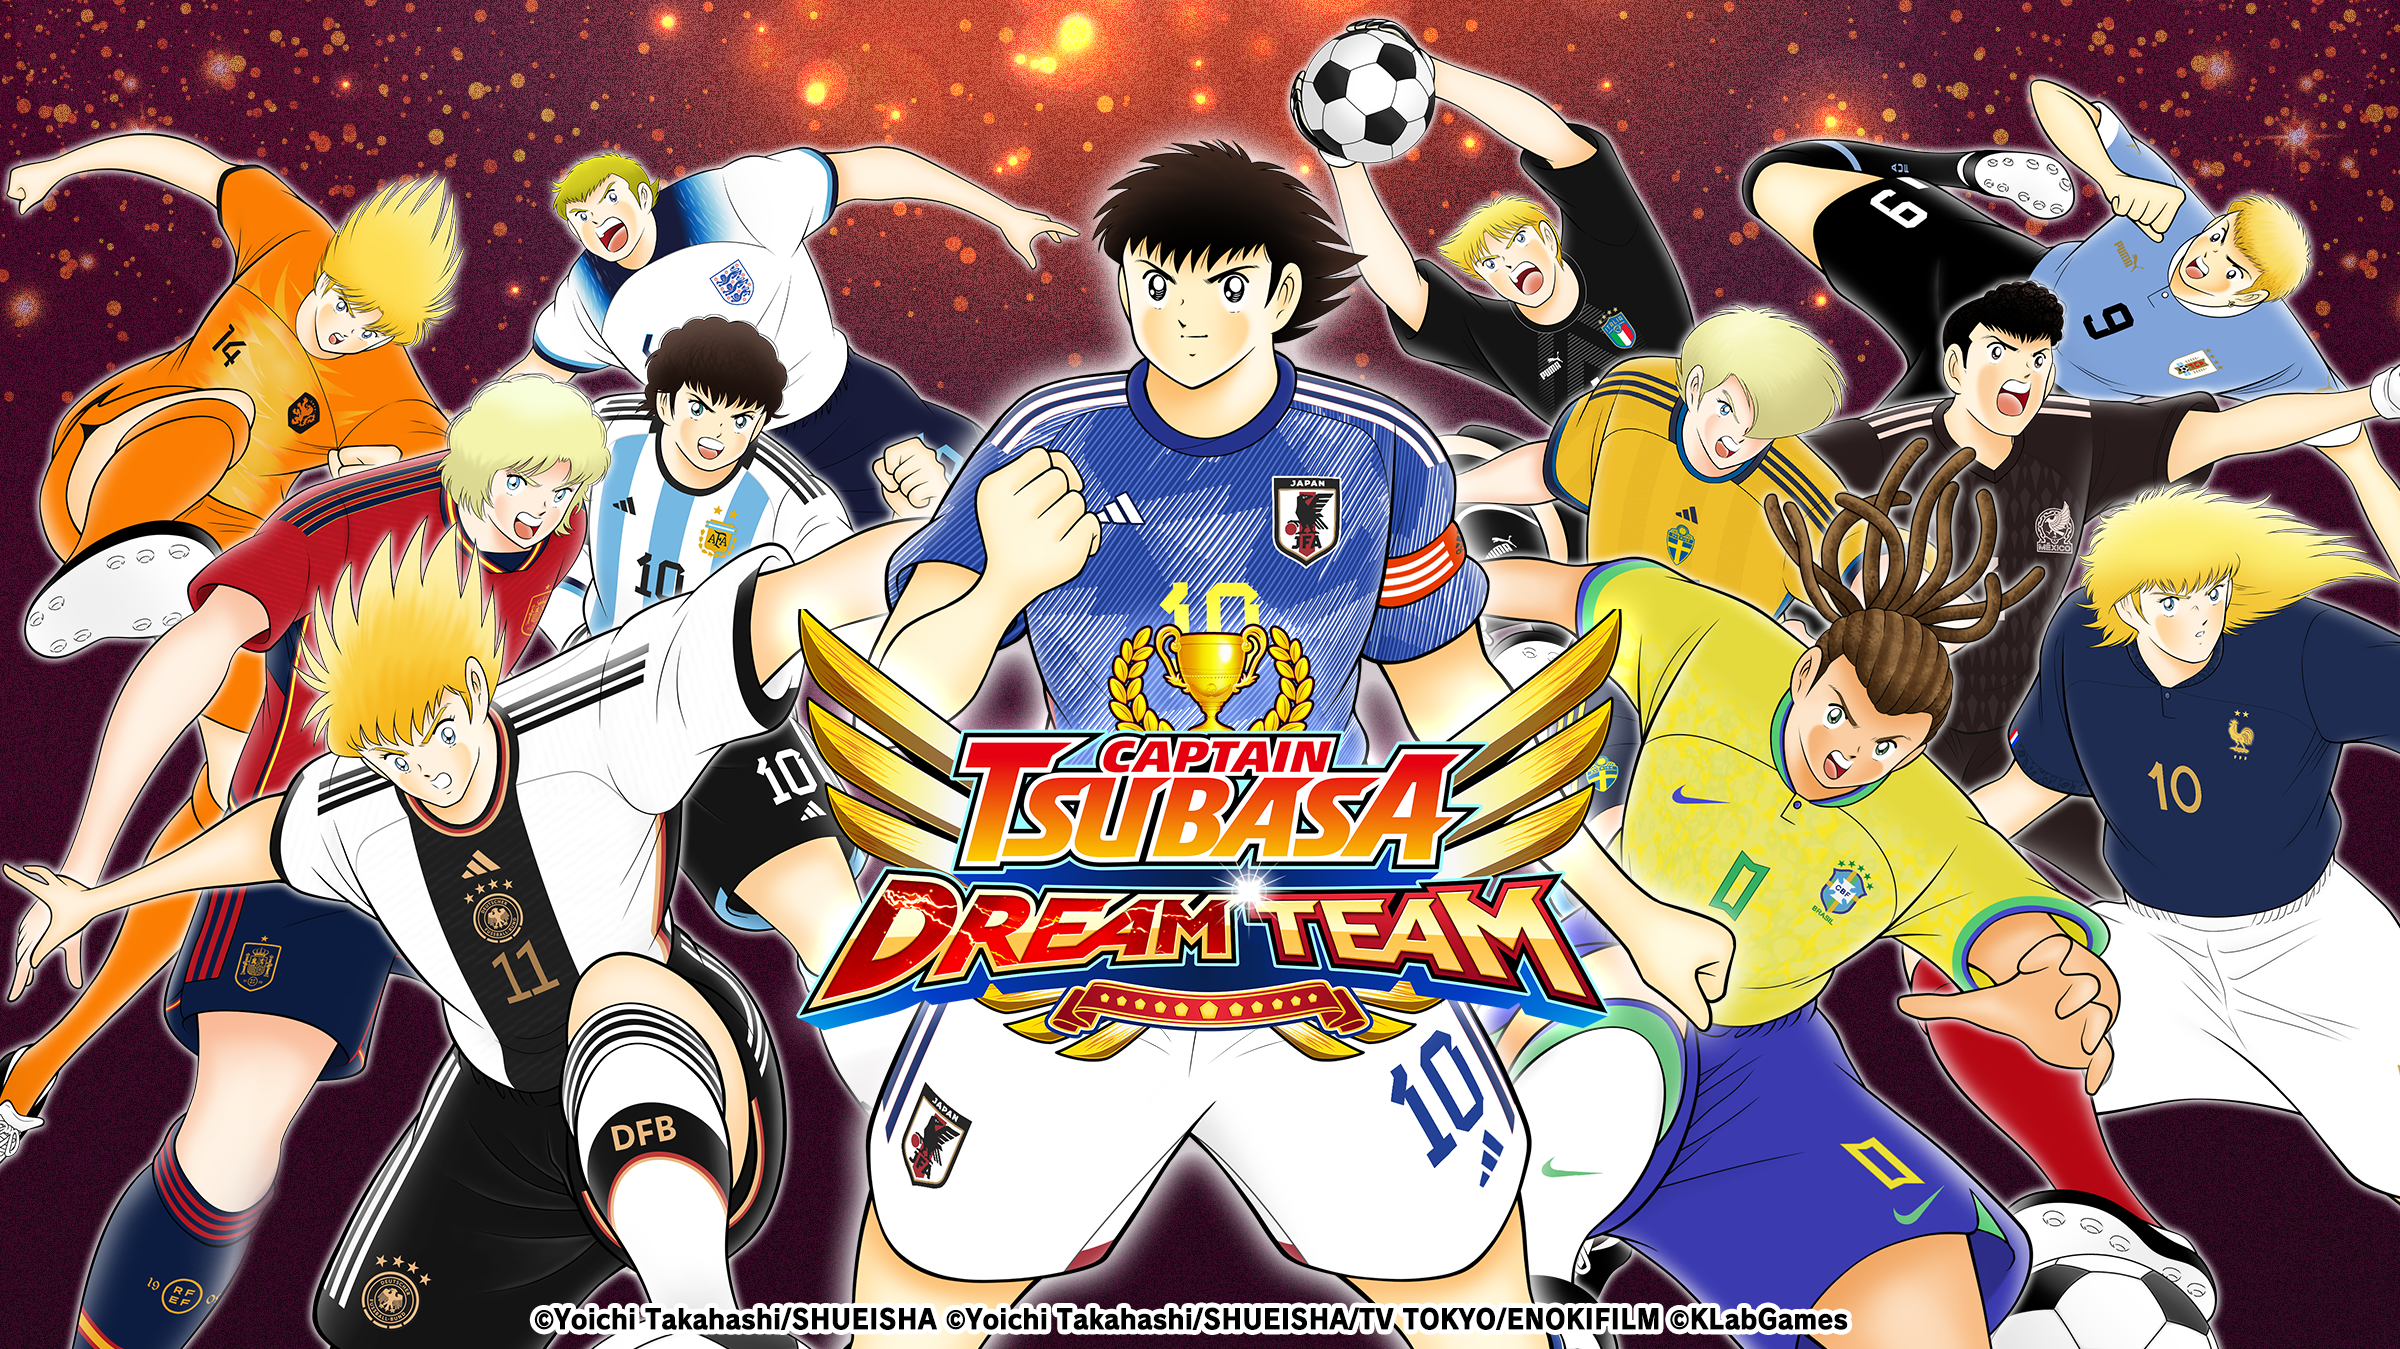 لعبة Captain Tsubasa: Dream Team تطلق لأول مرة لاعبين جدد بالزي الرسمي للمنتخبات الوطنية من ...